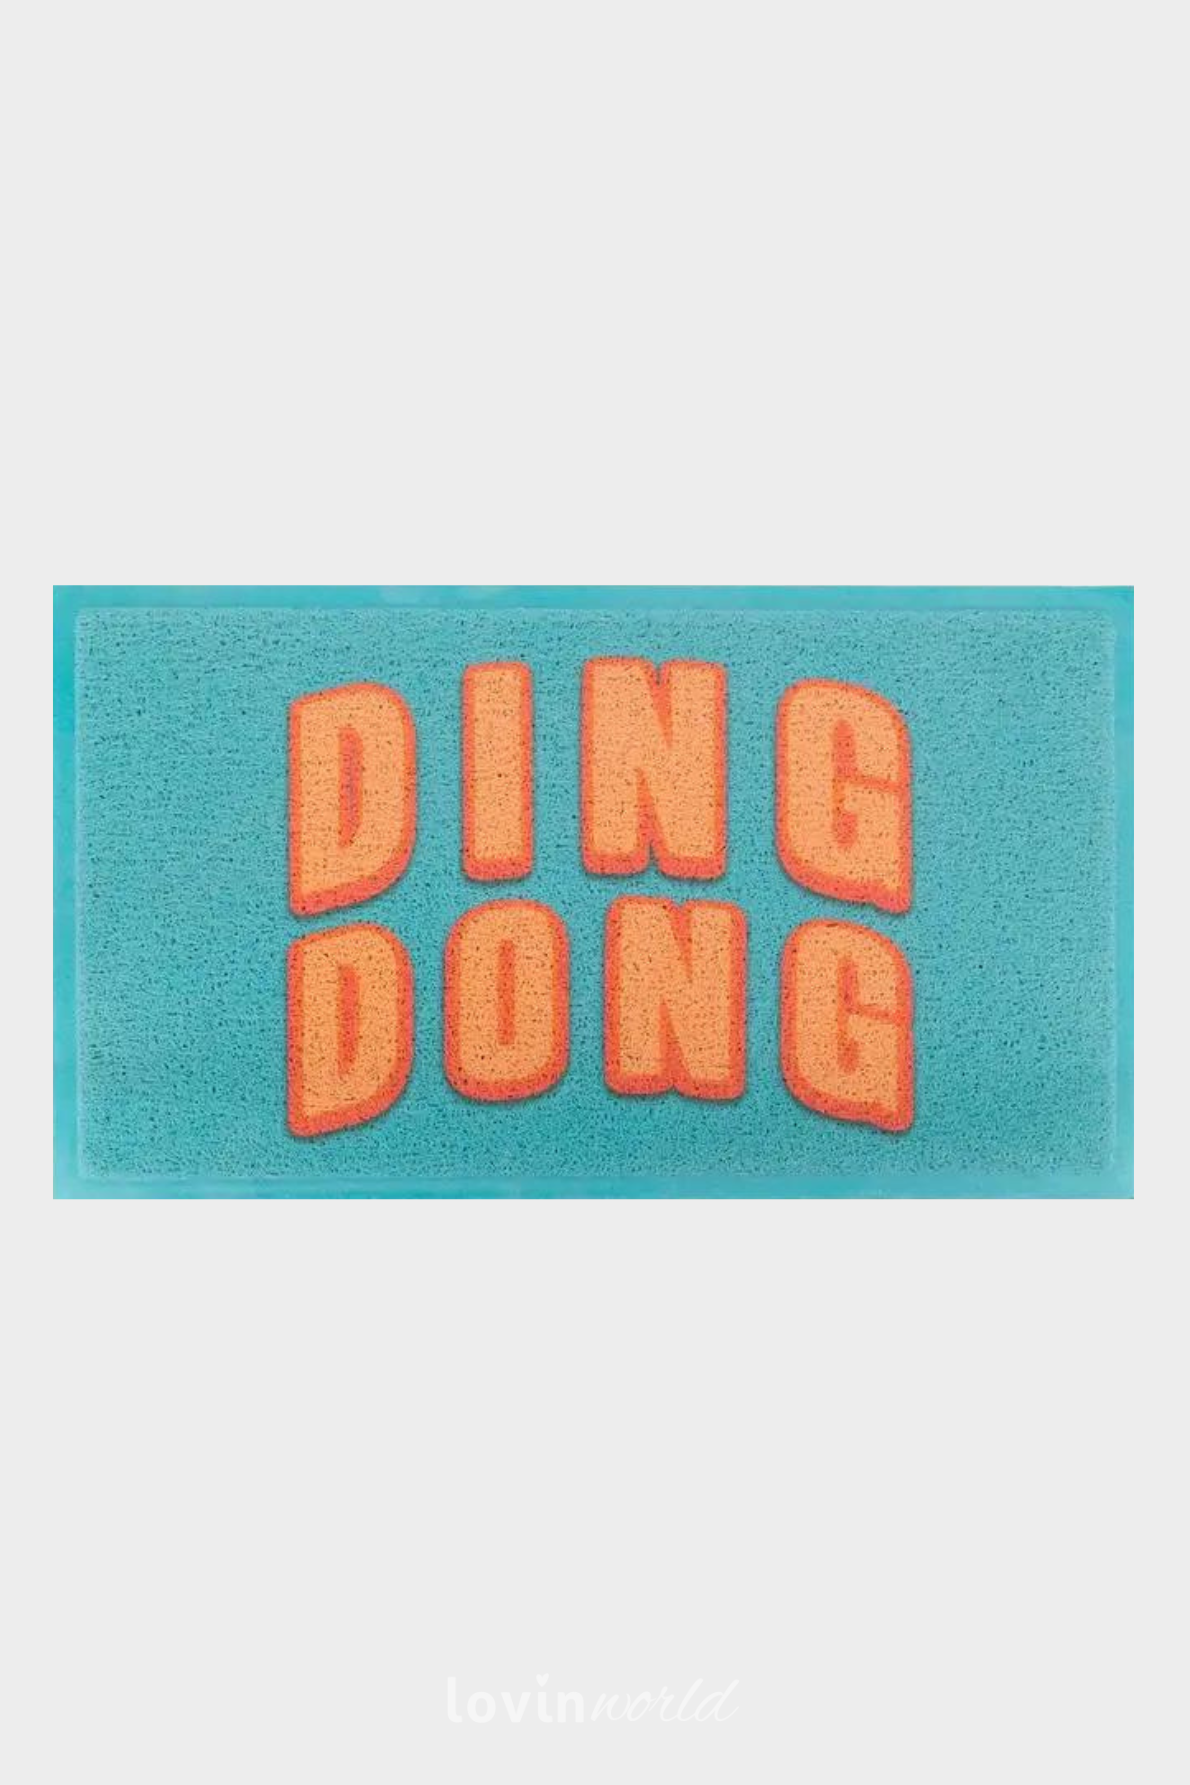 Zerbino particolare Ding Dong, in multicolore 40x70 cm.-1